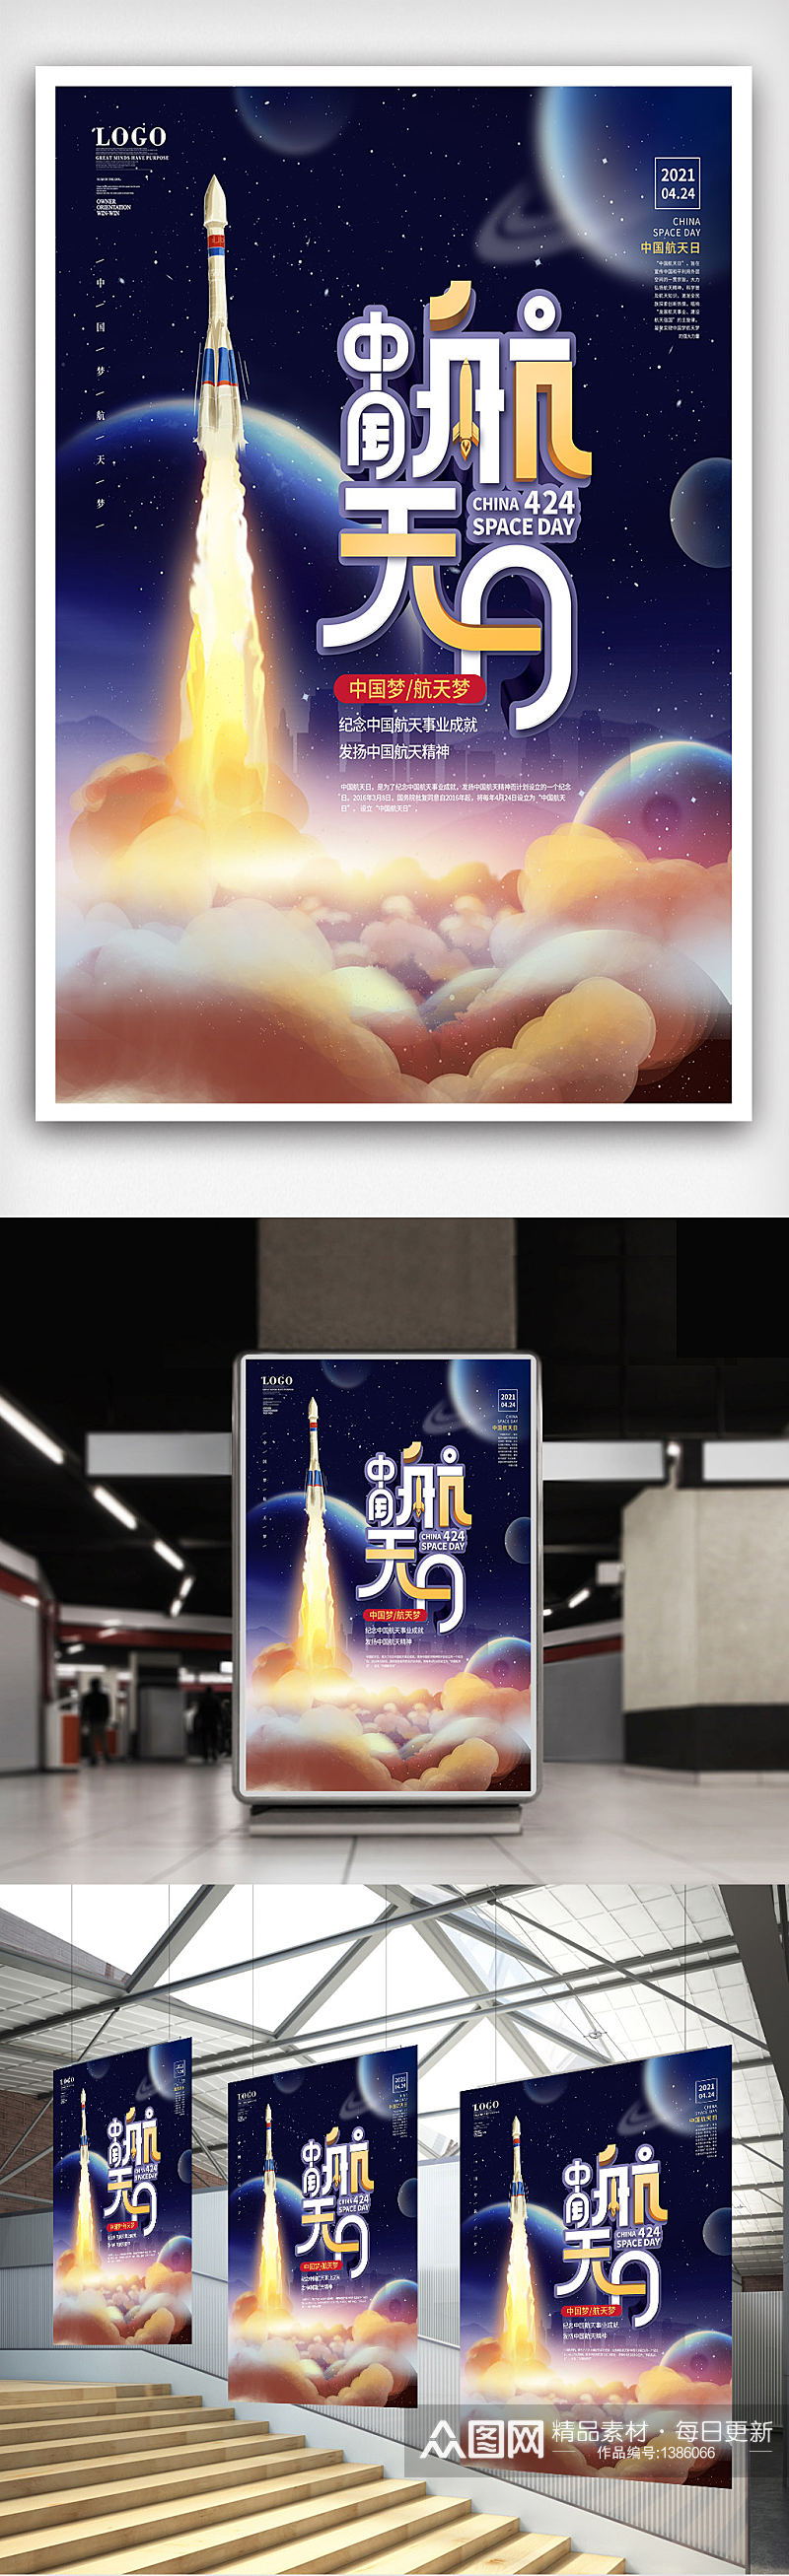 原创简约风424中国航天日宣传海报素材